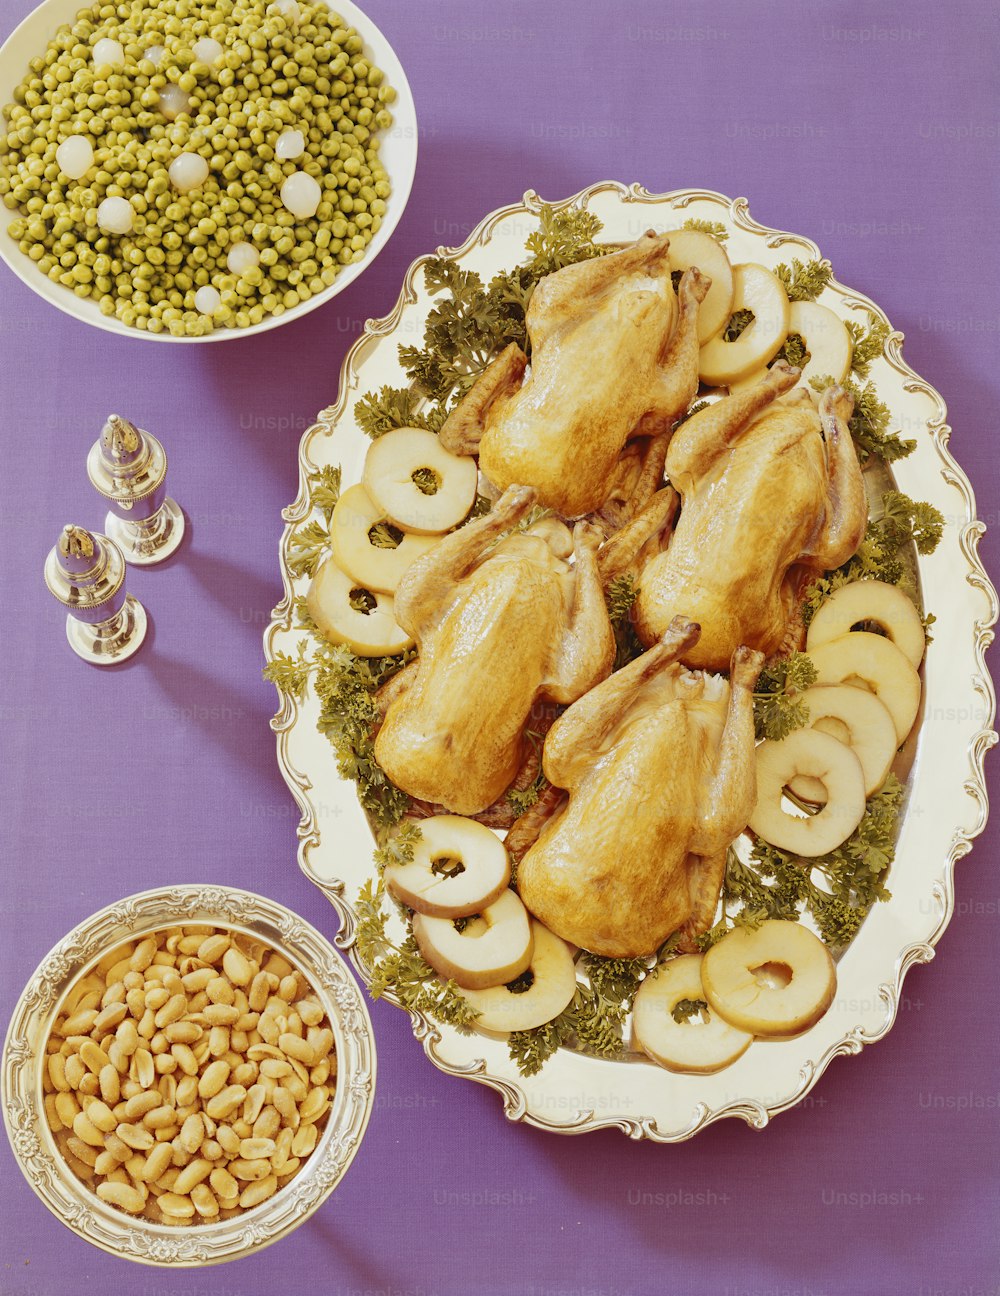 un plato de pollo, champiñones, guisantes y guisantes en una mesa púrpura